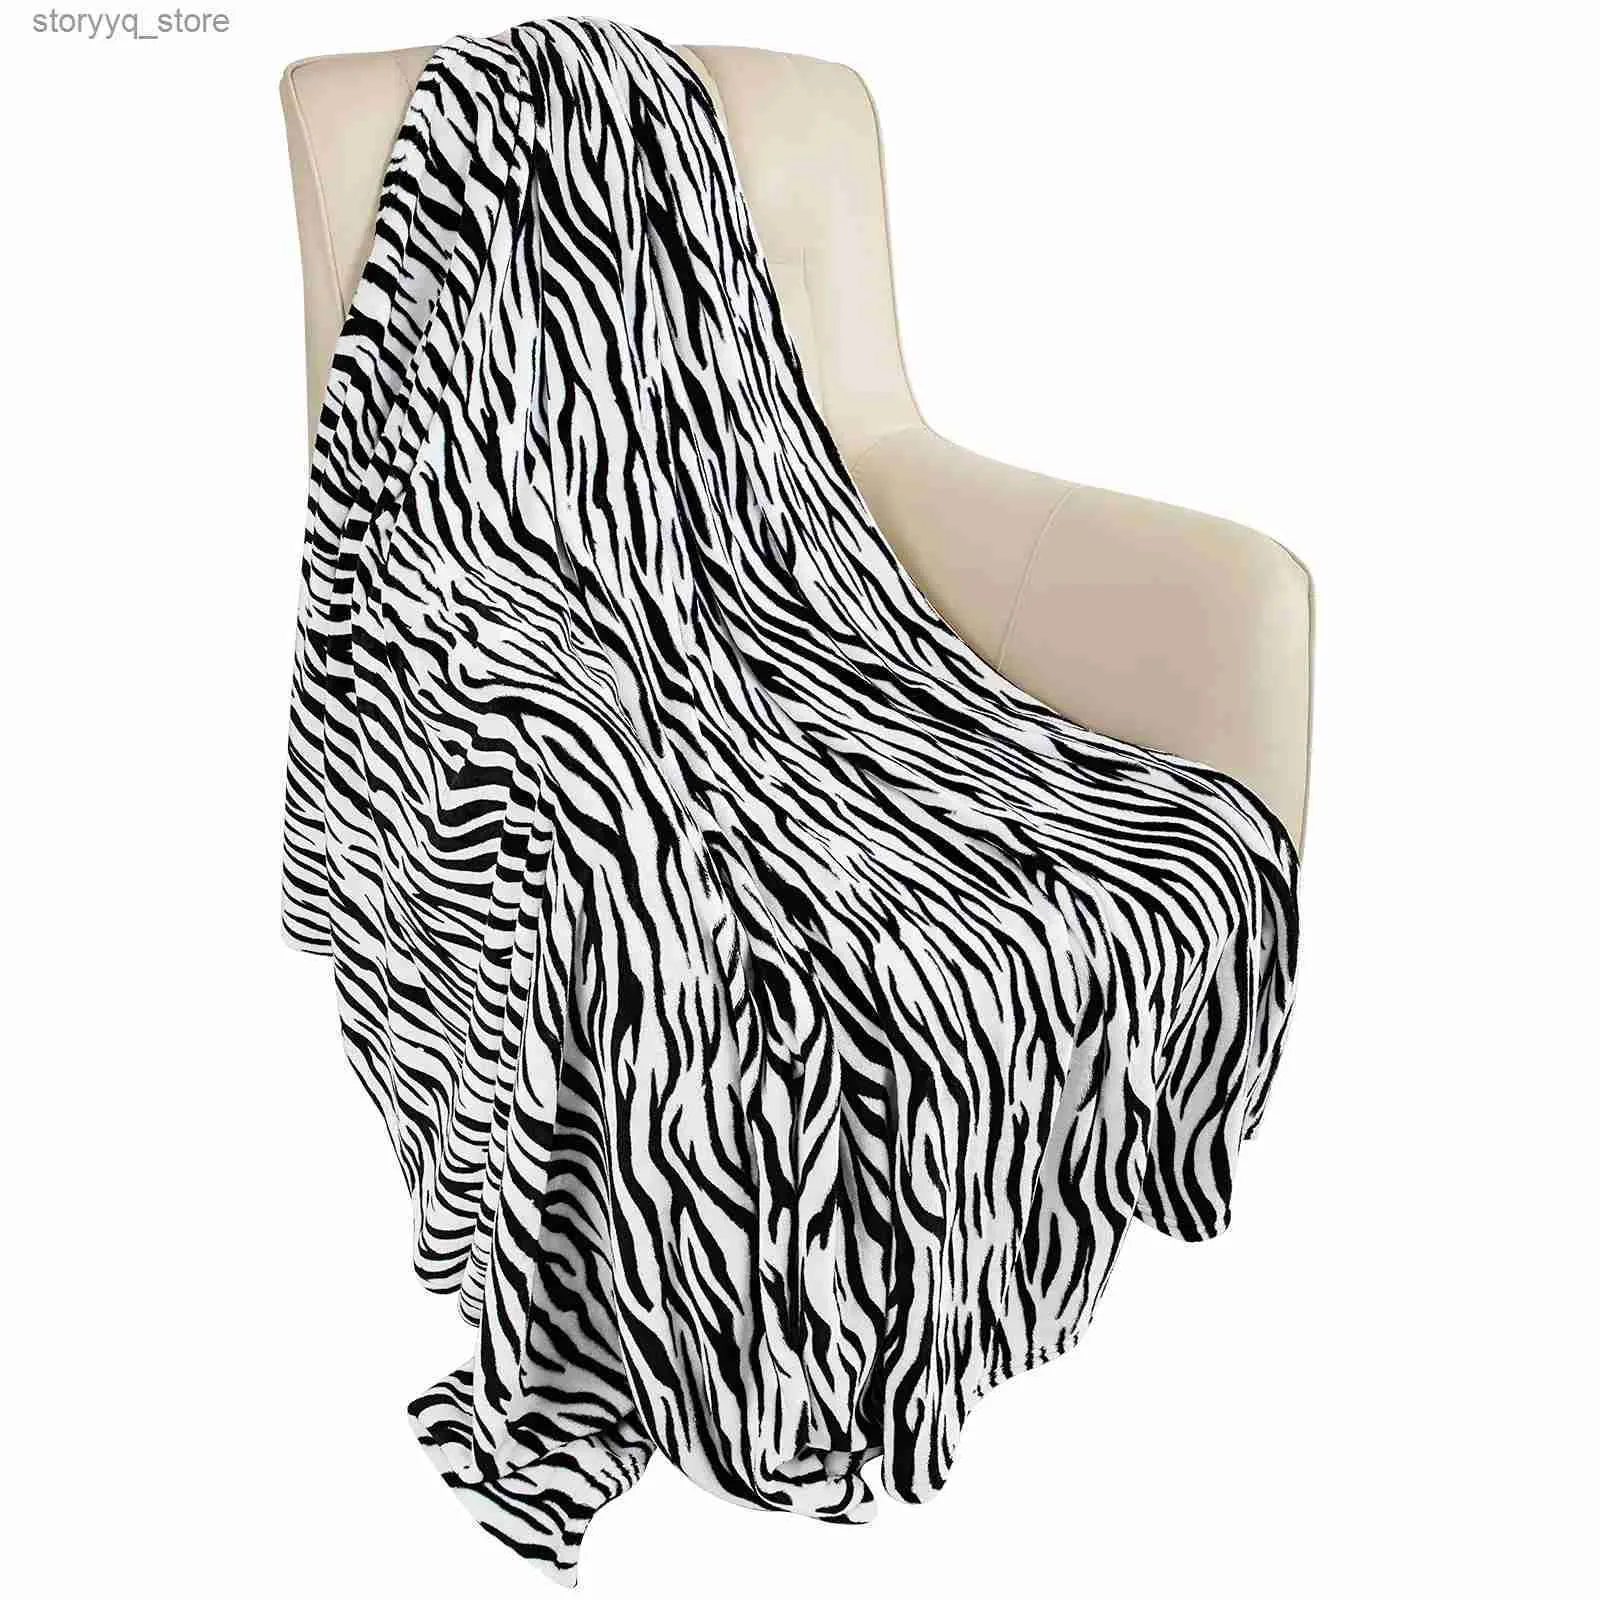 電気毛布フランネルフリースカウチ用のゼブラの毛布の毛布を投げる黒い白いファジー軽量暖かい居心地の良い快適な柔らかい毛布ソファQ231130